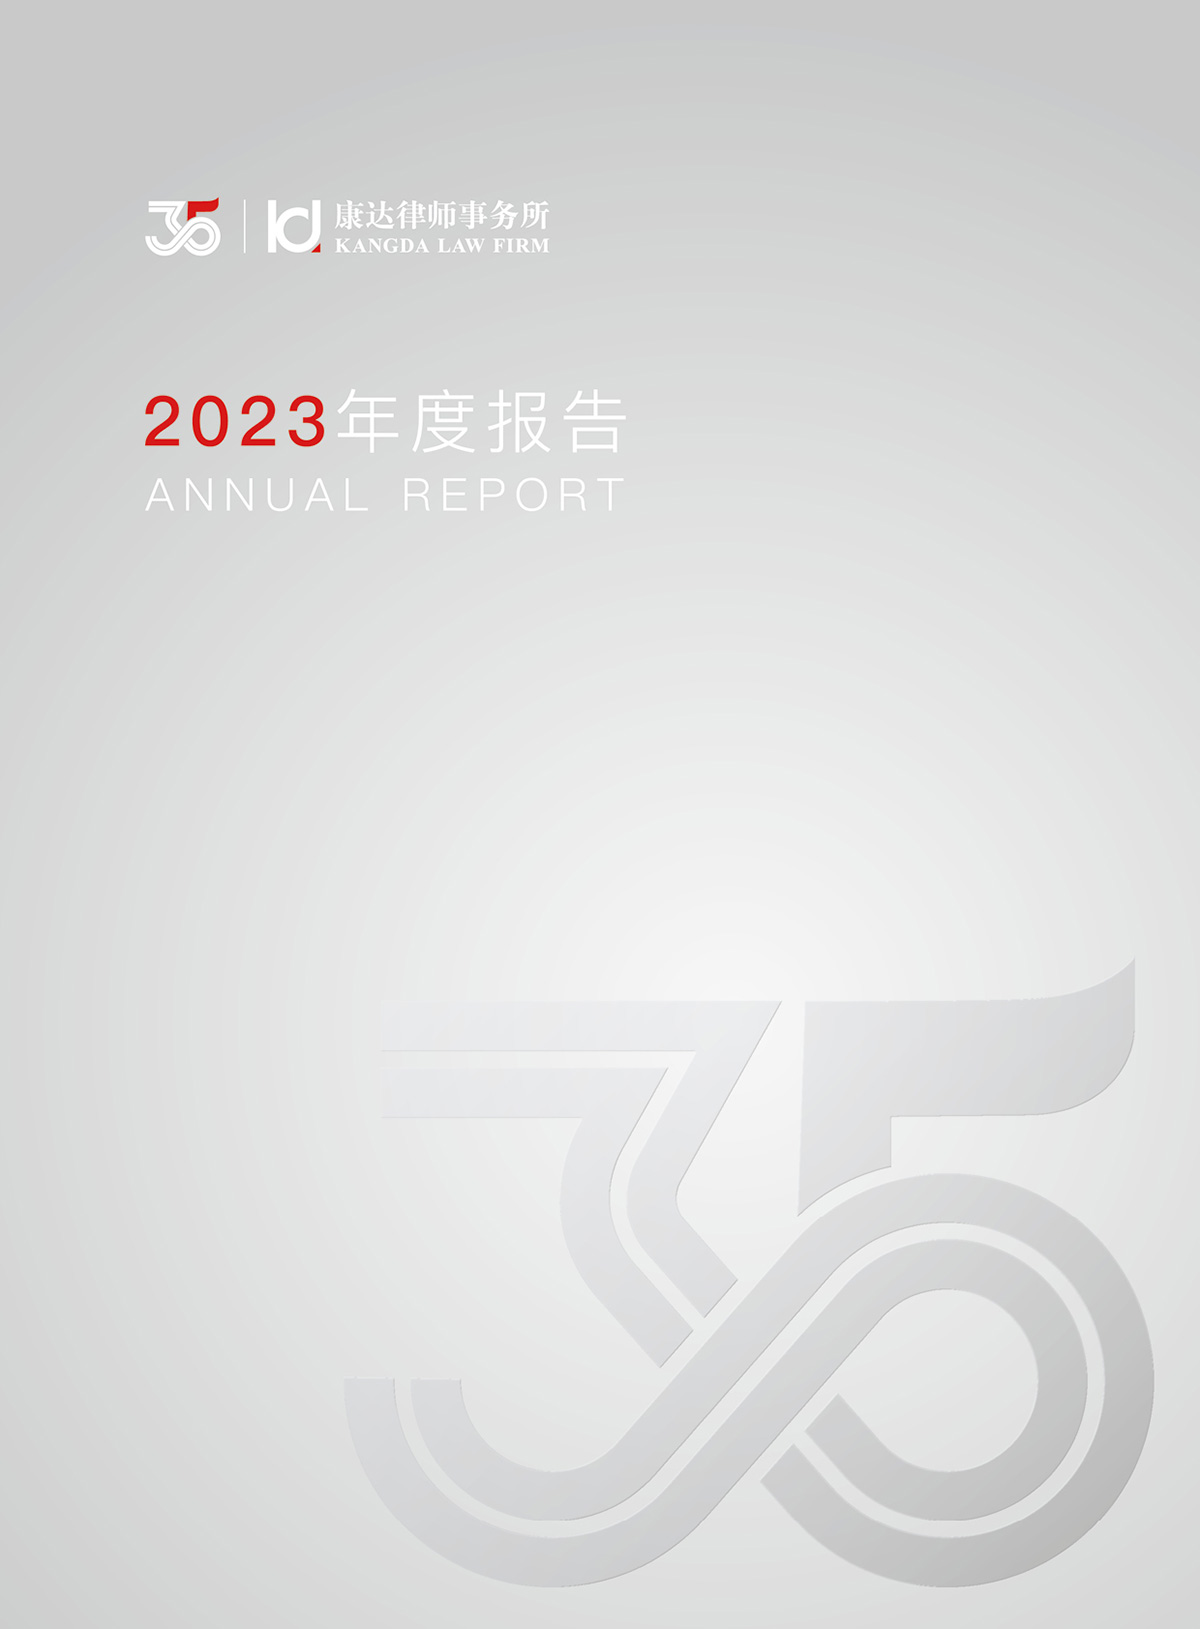 2023年度报告